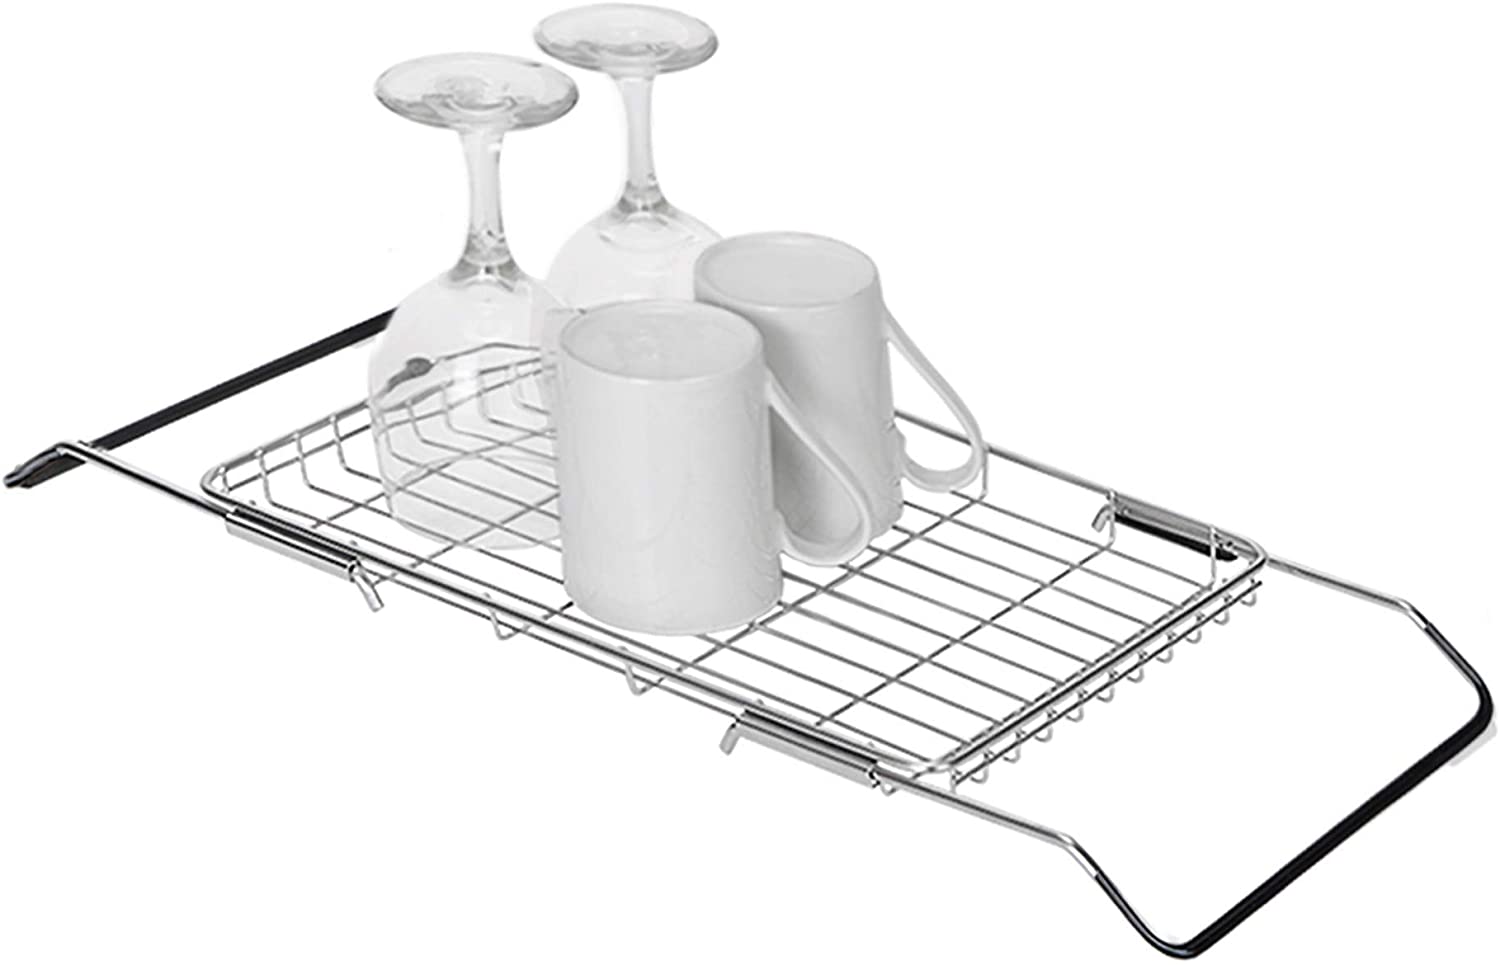 Adjustable Stainless Steel Dish Rack